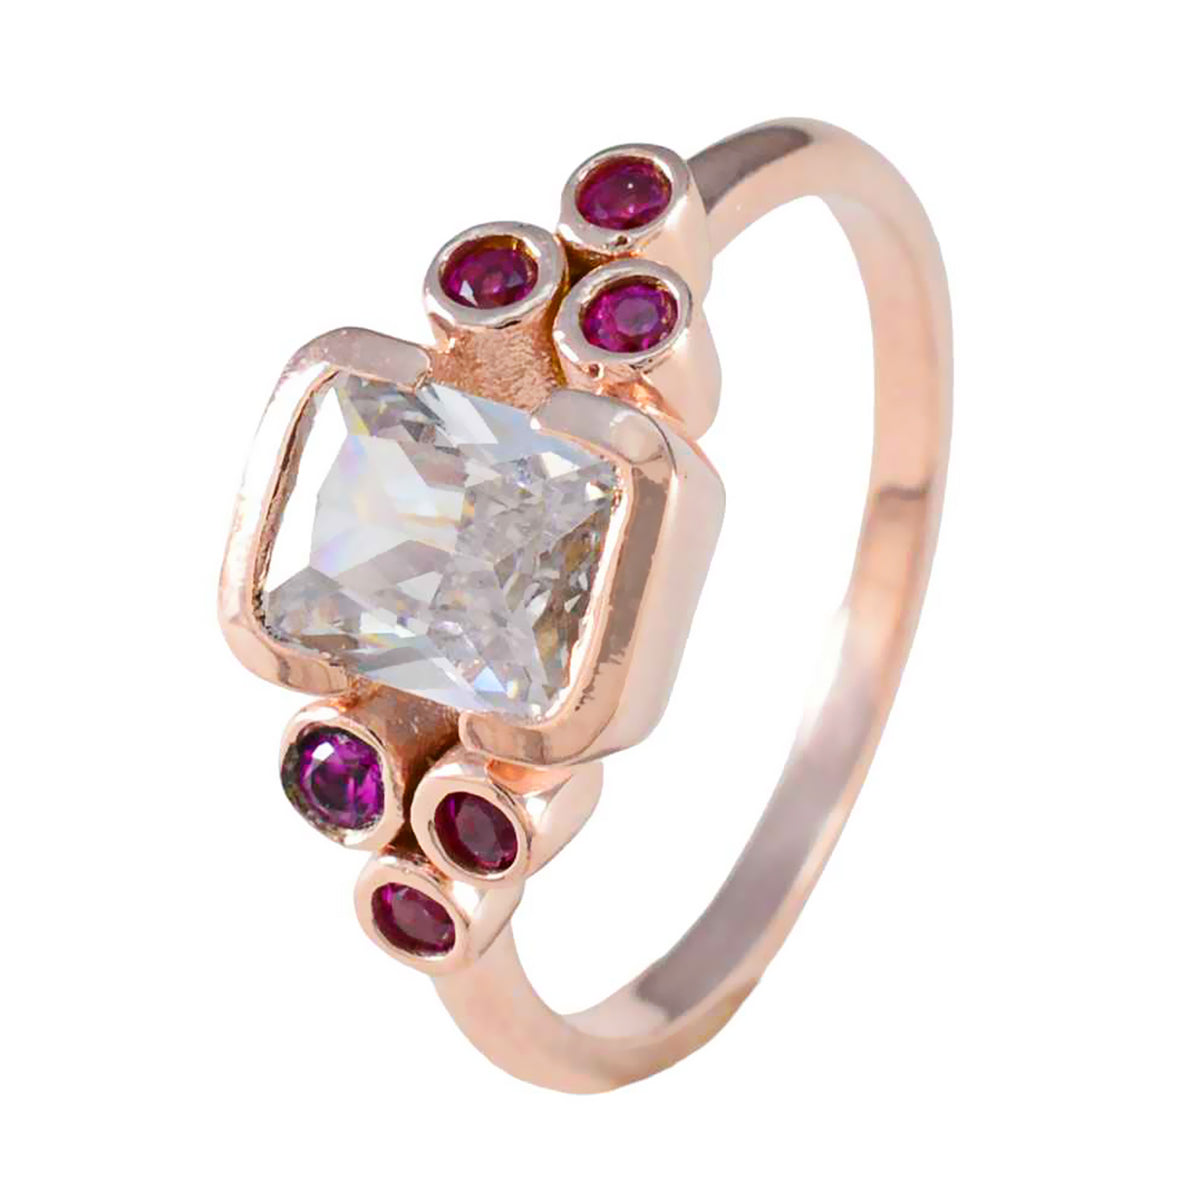 anello in argento quantitativo riyo con placcatura in oro rosa rubino cz pietra forma ottagonale con castone anello da cocktail di gioielli firmati